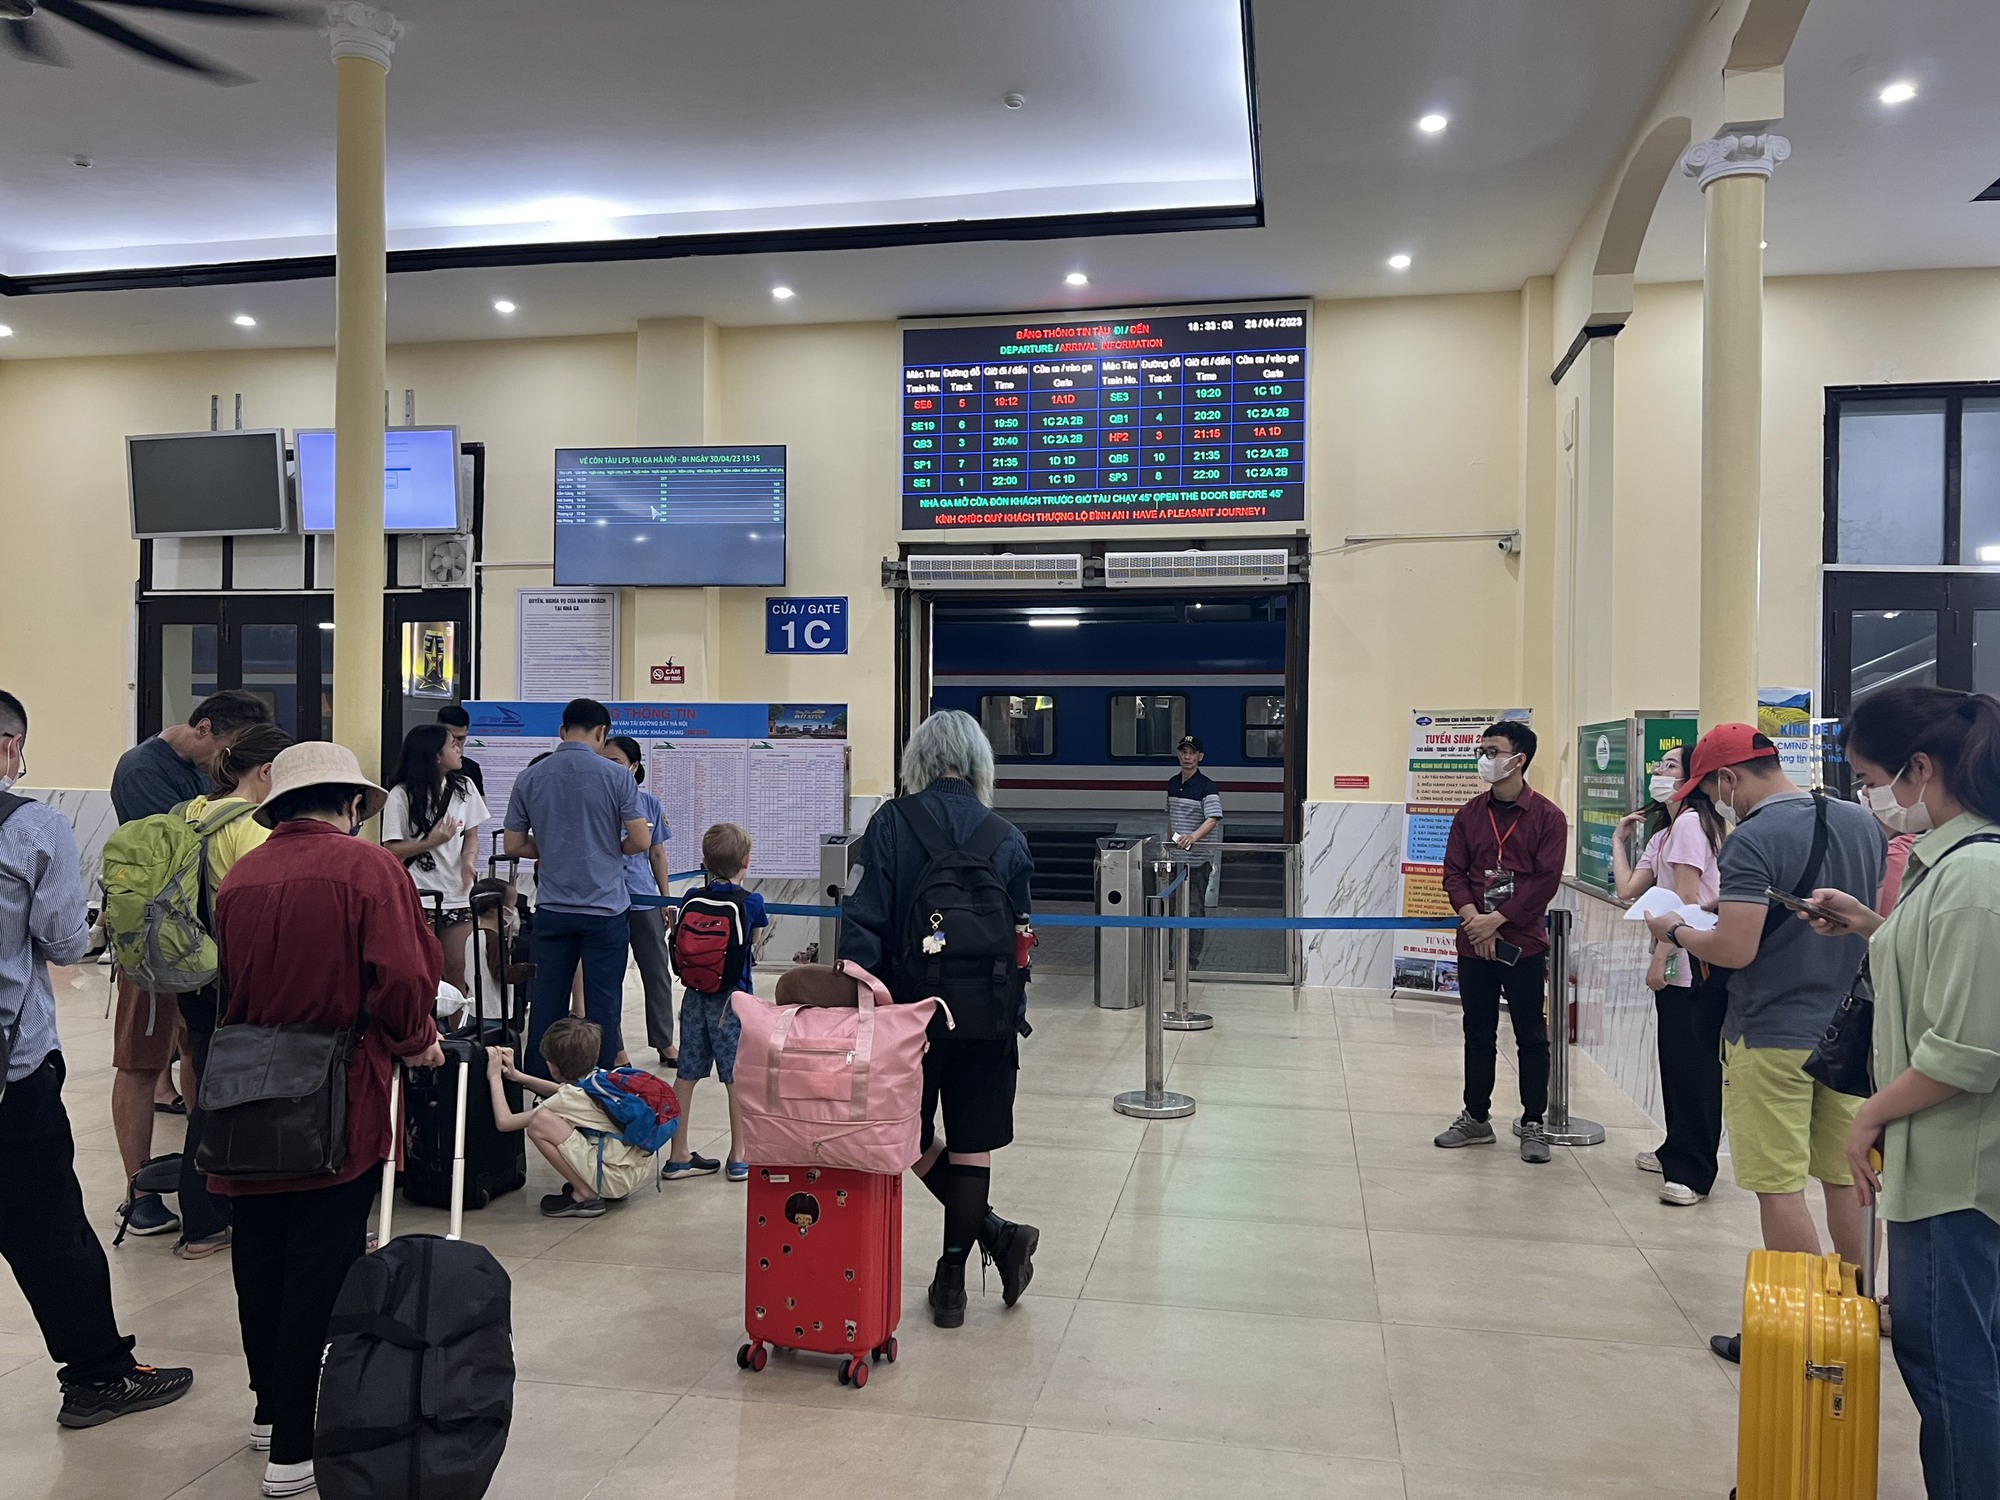 Cận cảnh người dân đổ dồn về ga Hà Nội về quê nghỉ lễ 30/4 - 1/5 - Ảnh 3.